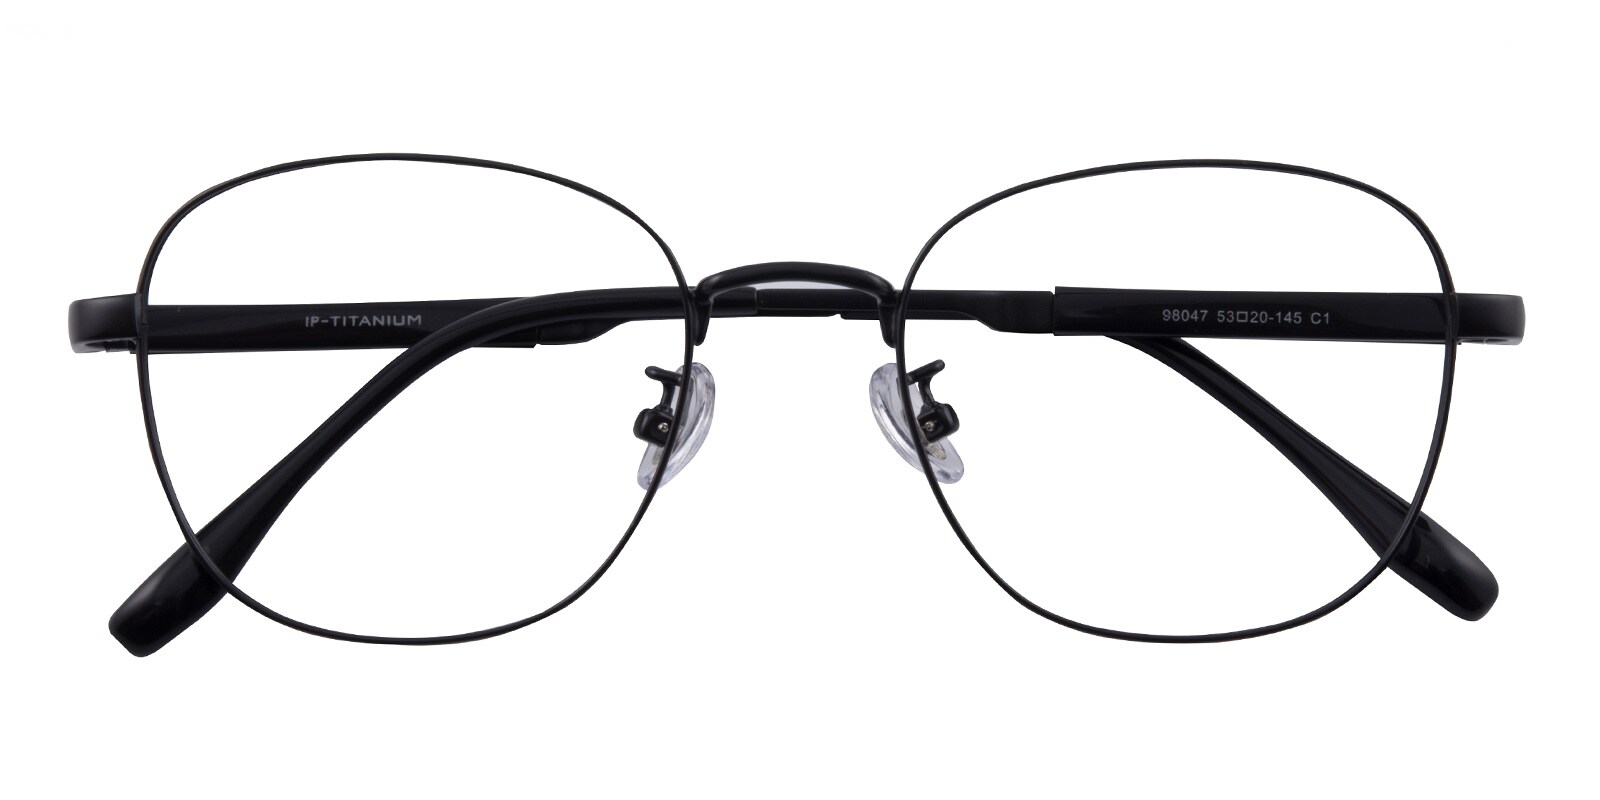 Oval Eyeglasses, Full Frame Black Plastic - FT0556